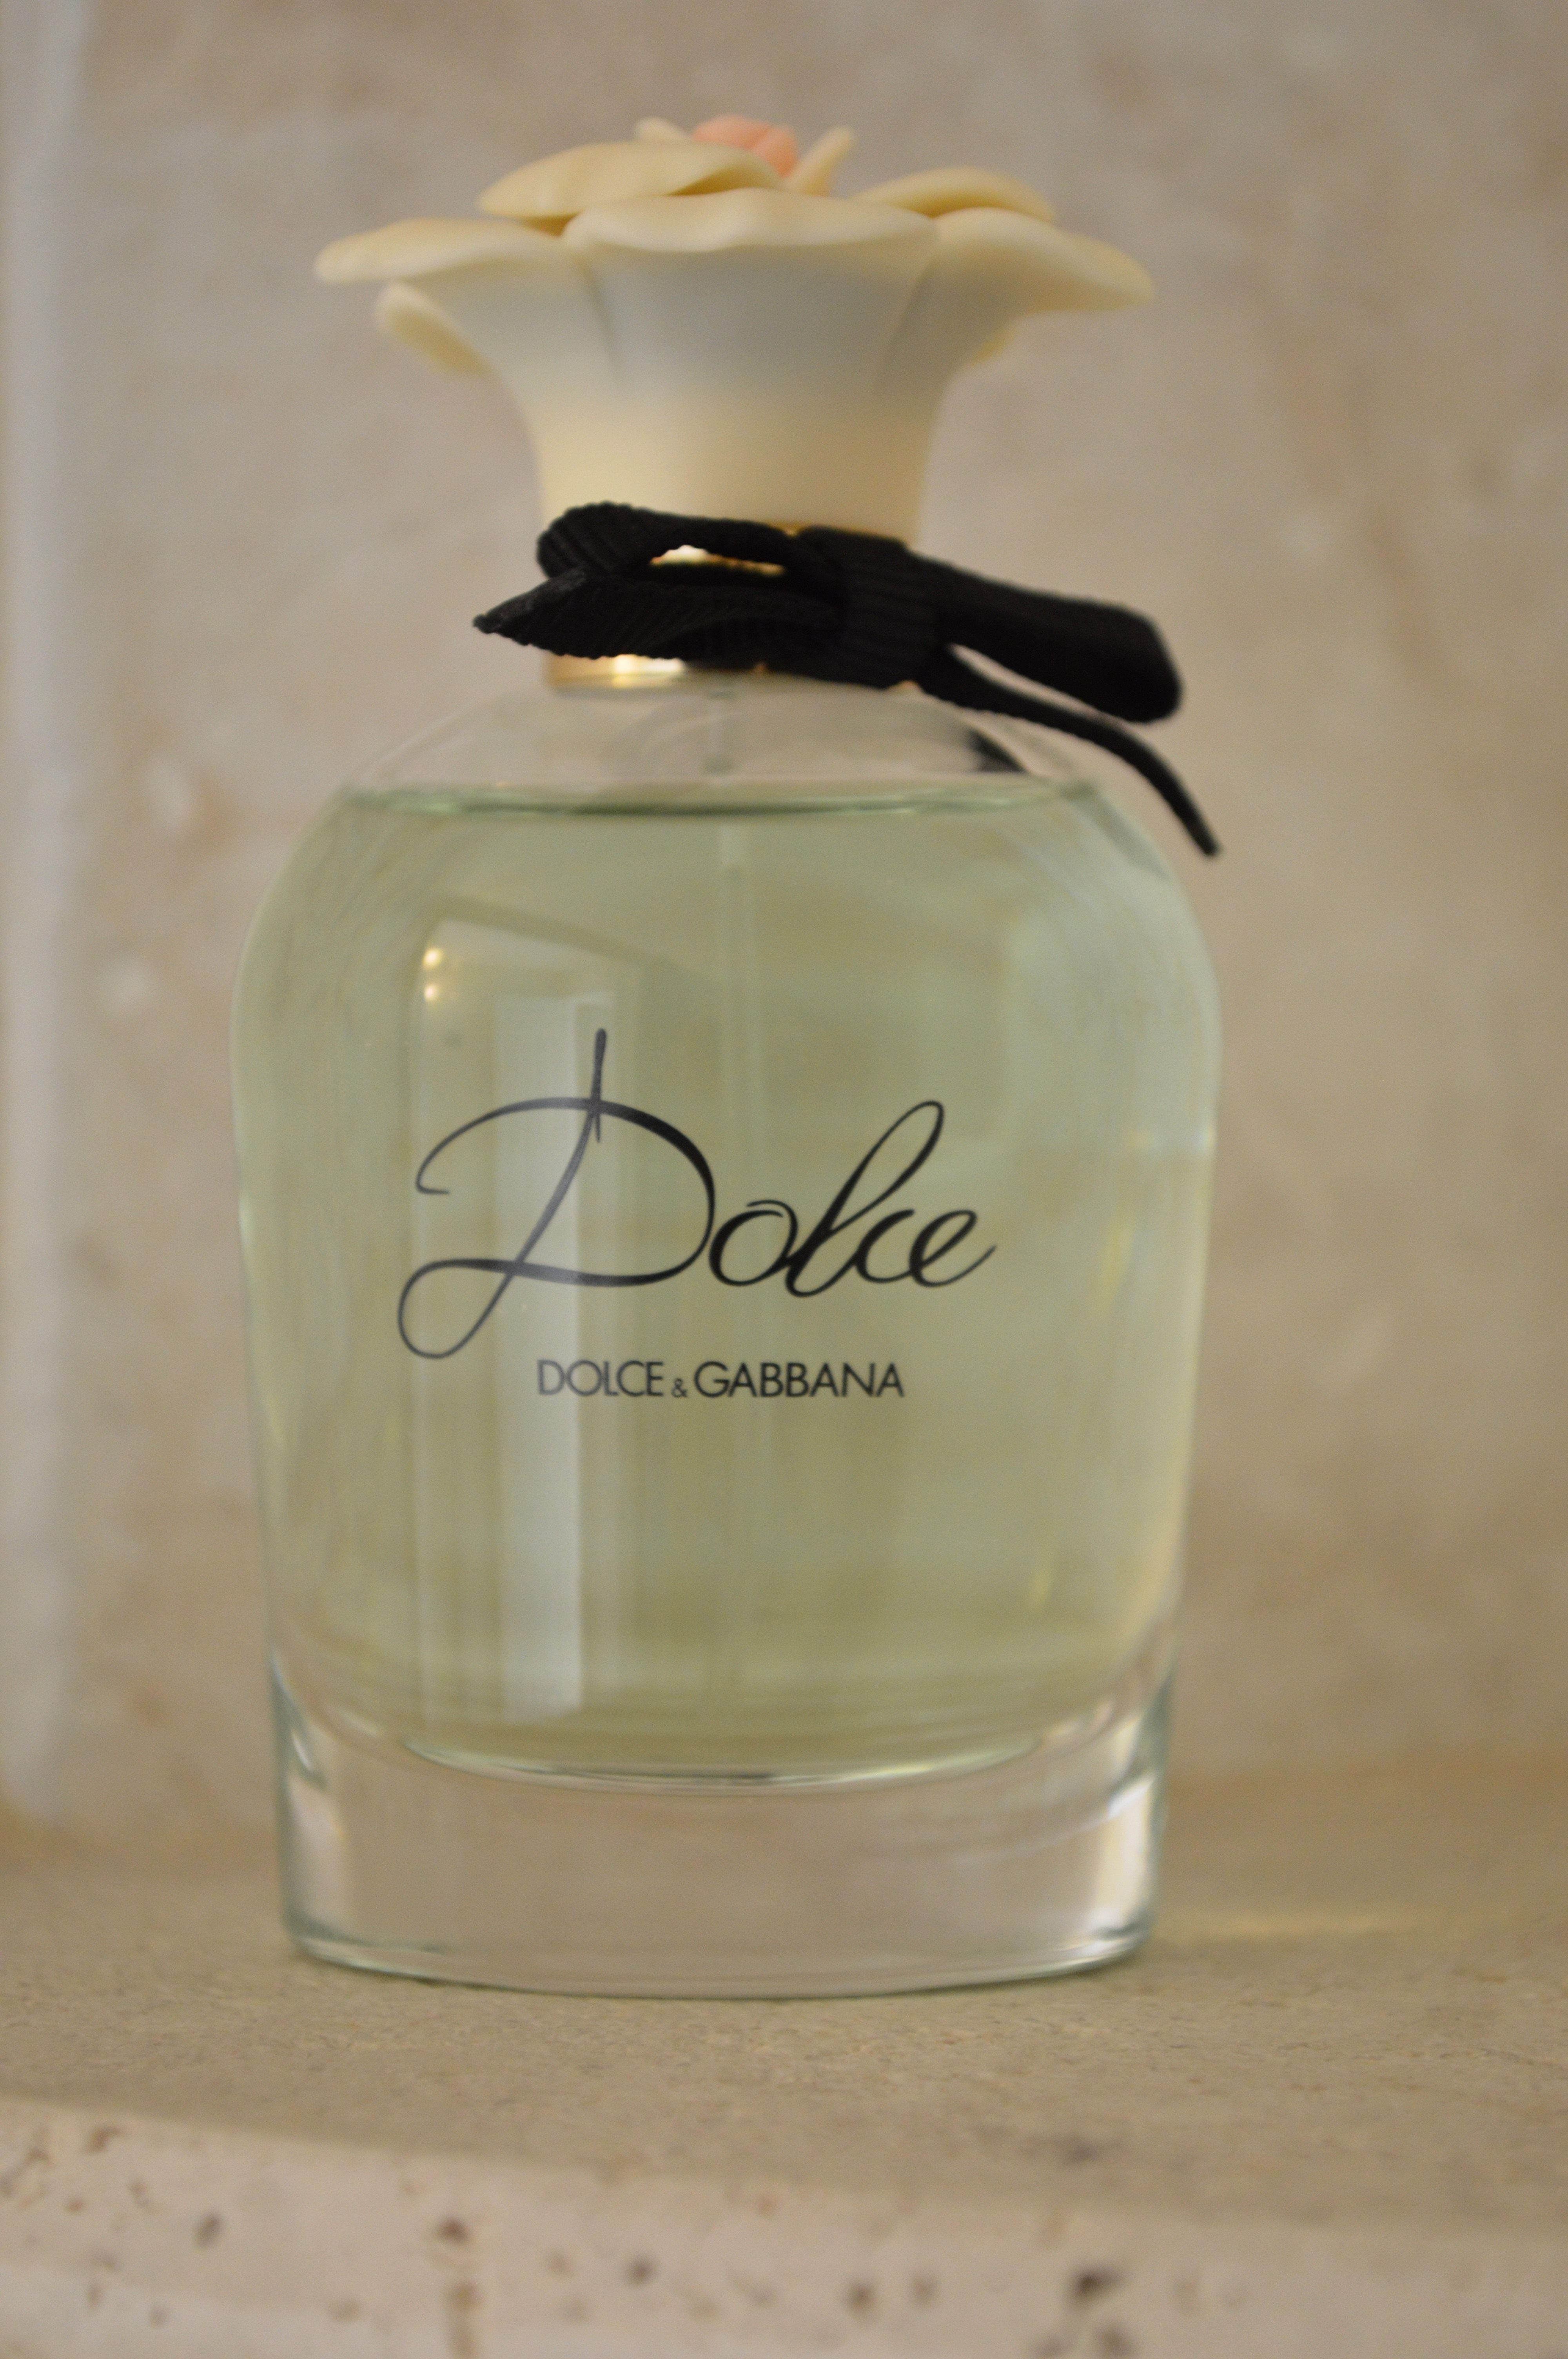 Dolce & Gabbana Dolce eau de parfum review – Bay Area Fashionista